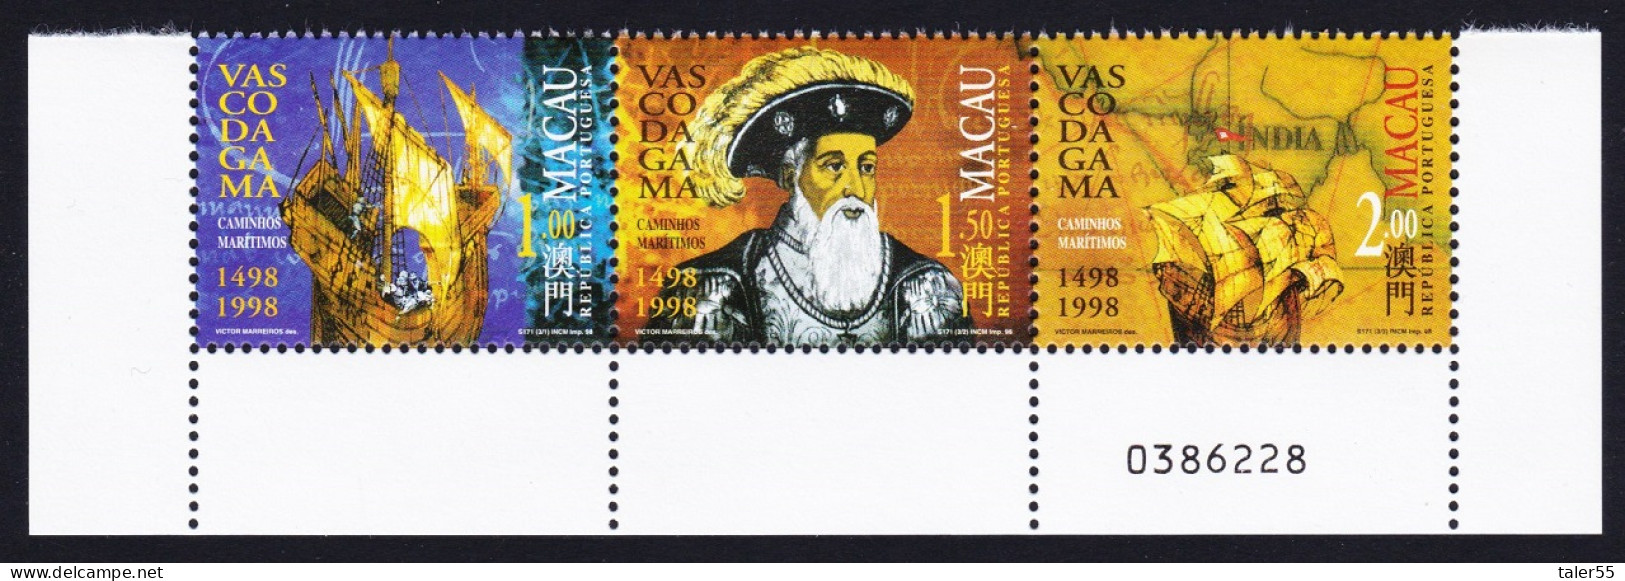 Macao Macau Vasco Da Gama 1498 Strip Of 3v Control Number 1998 MNH SG#1044-1046 Sc#943-946 - Neufs